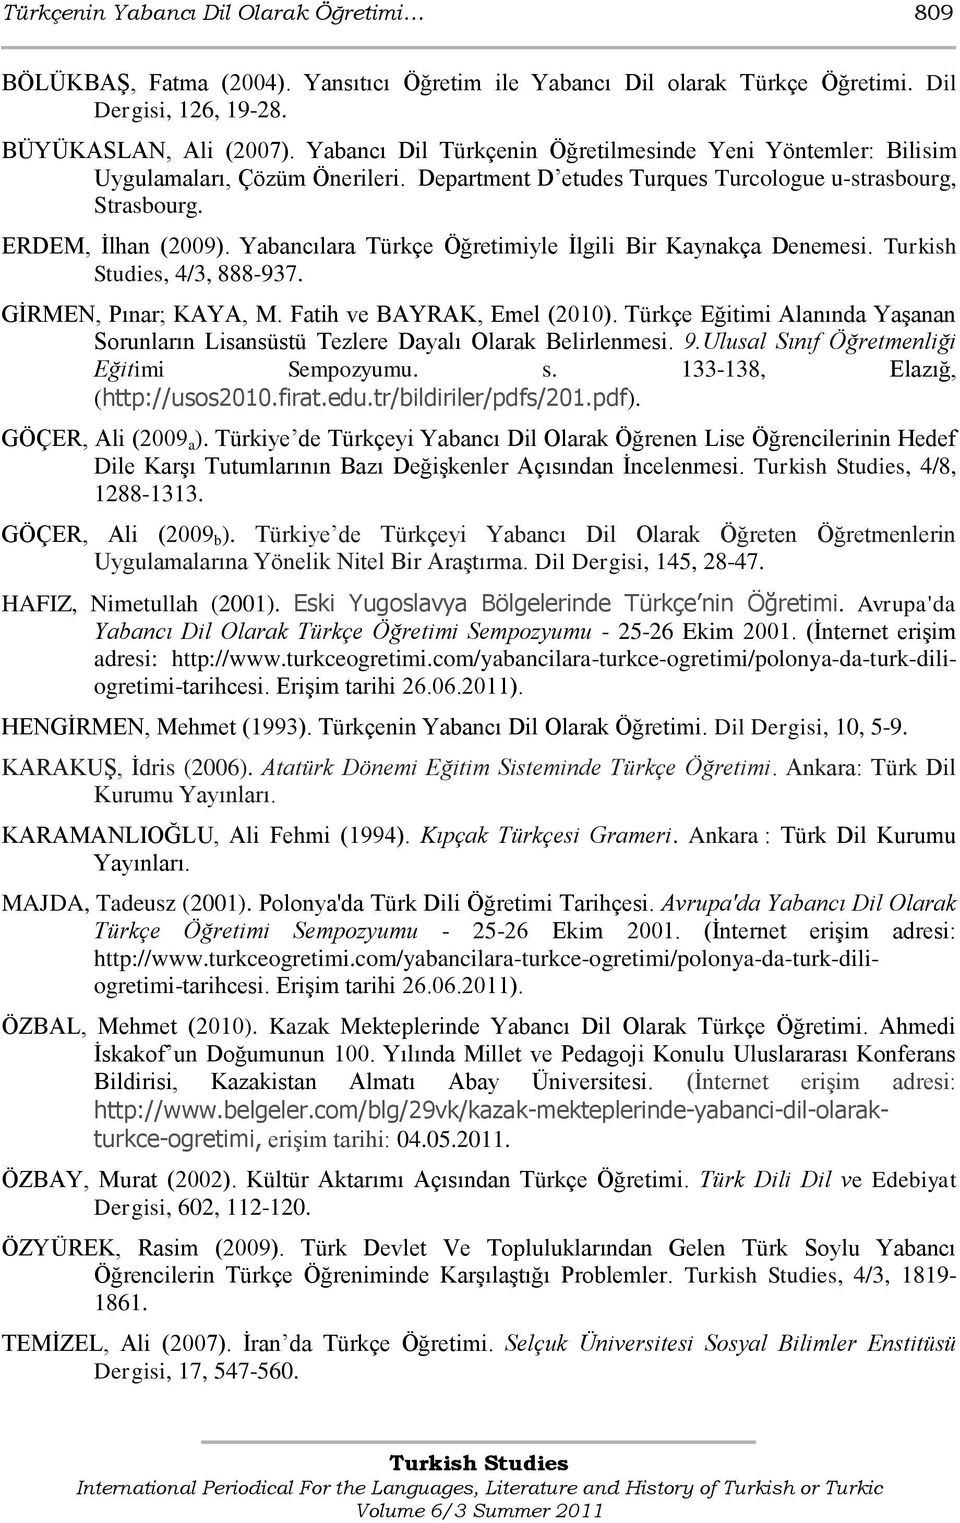 Yabancılara Türkçe Öğretimiyle Ġlgili Bir Kaynakça Denemesi. Turkish Studies, 4/3, 888-937. GĠRMEN, Pınar; KAYA, M. Fatih ve BAYRAK, Emel (2010).